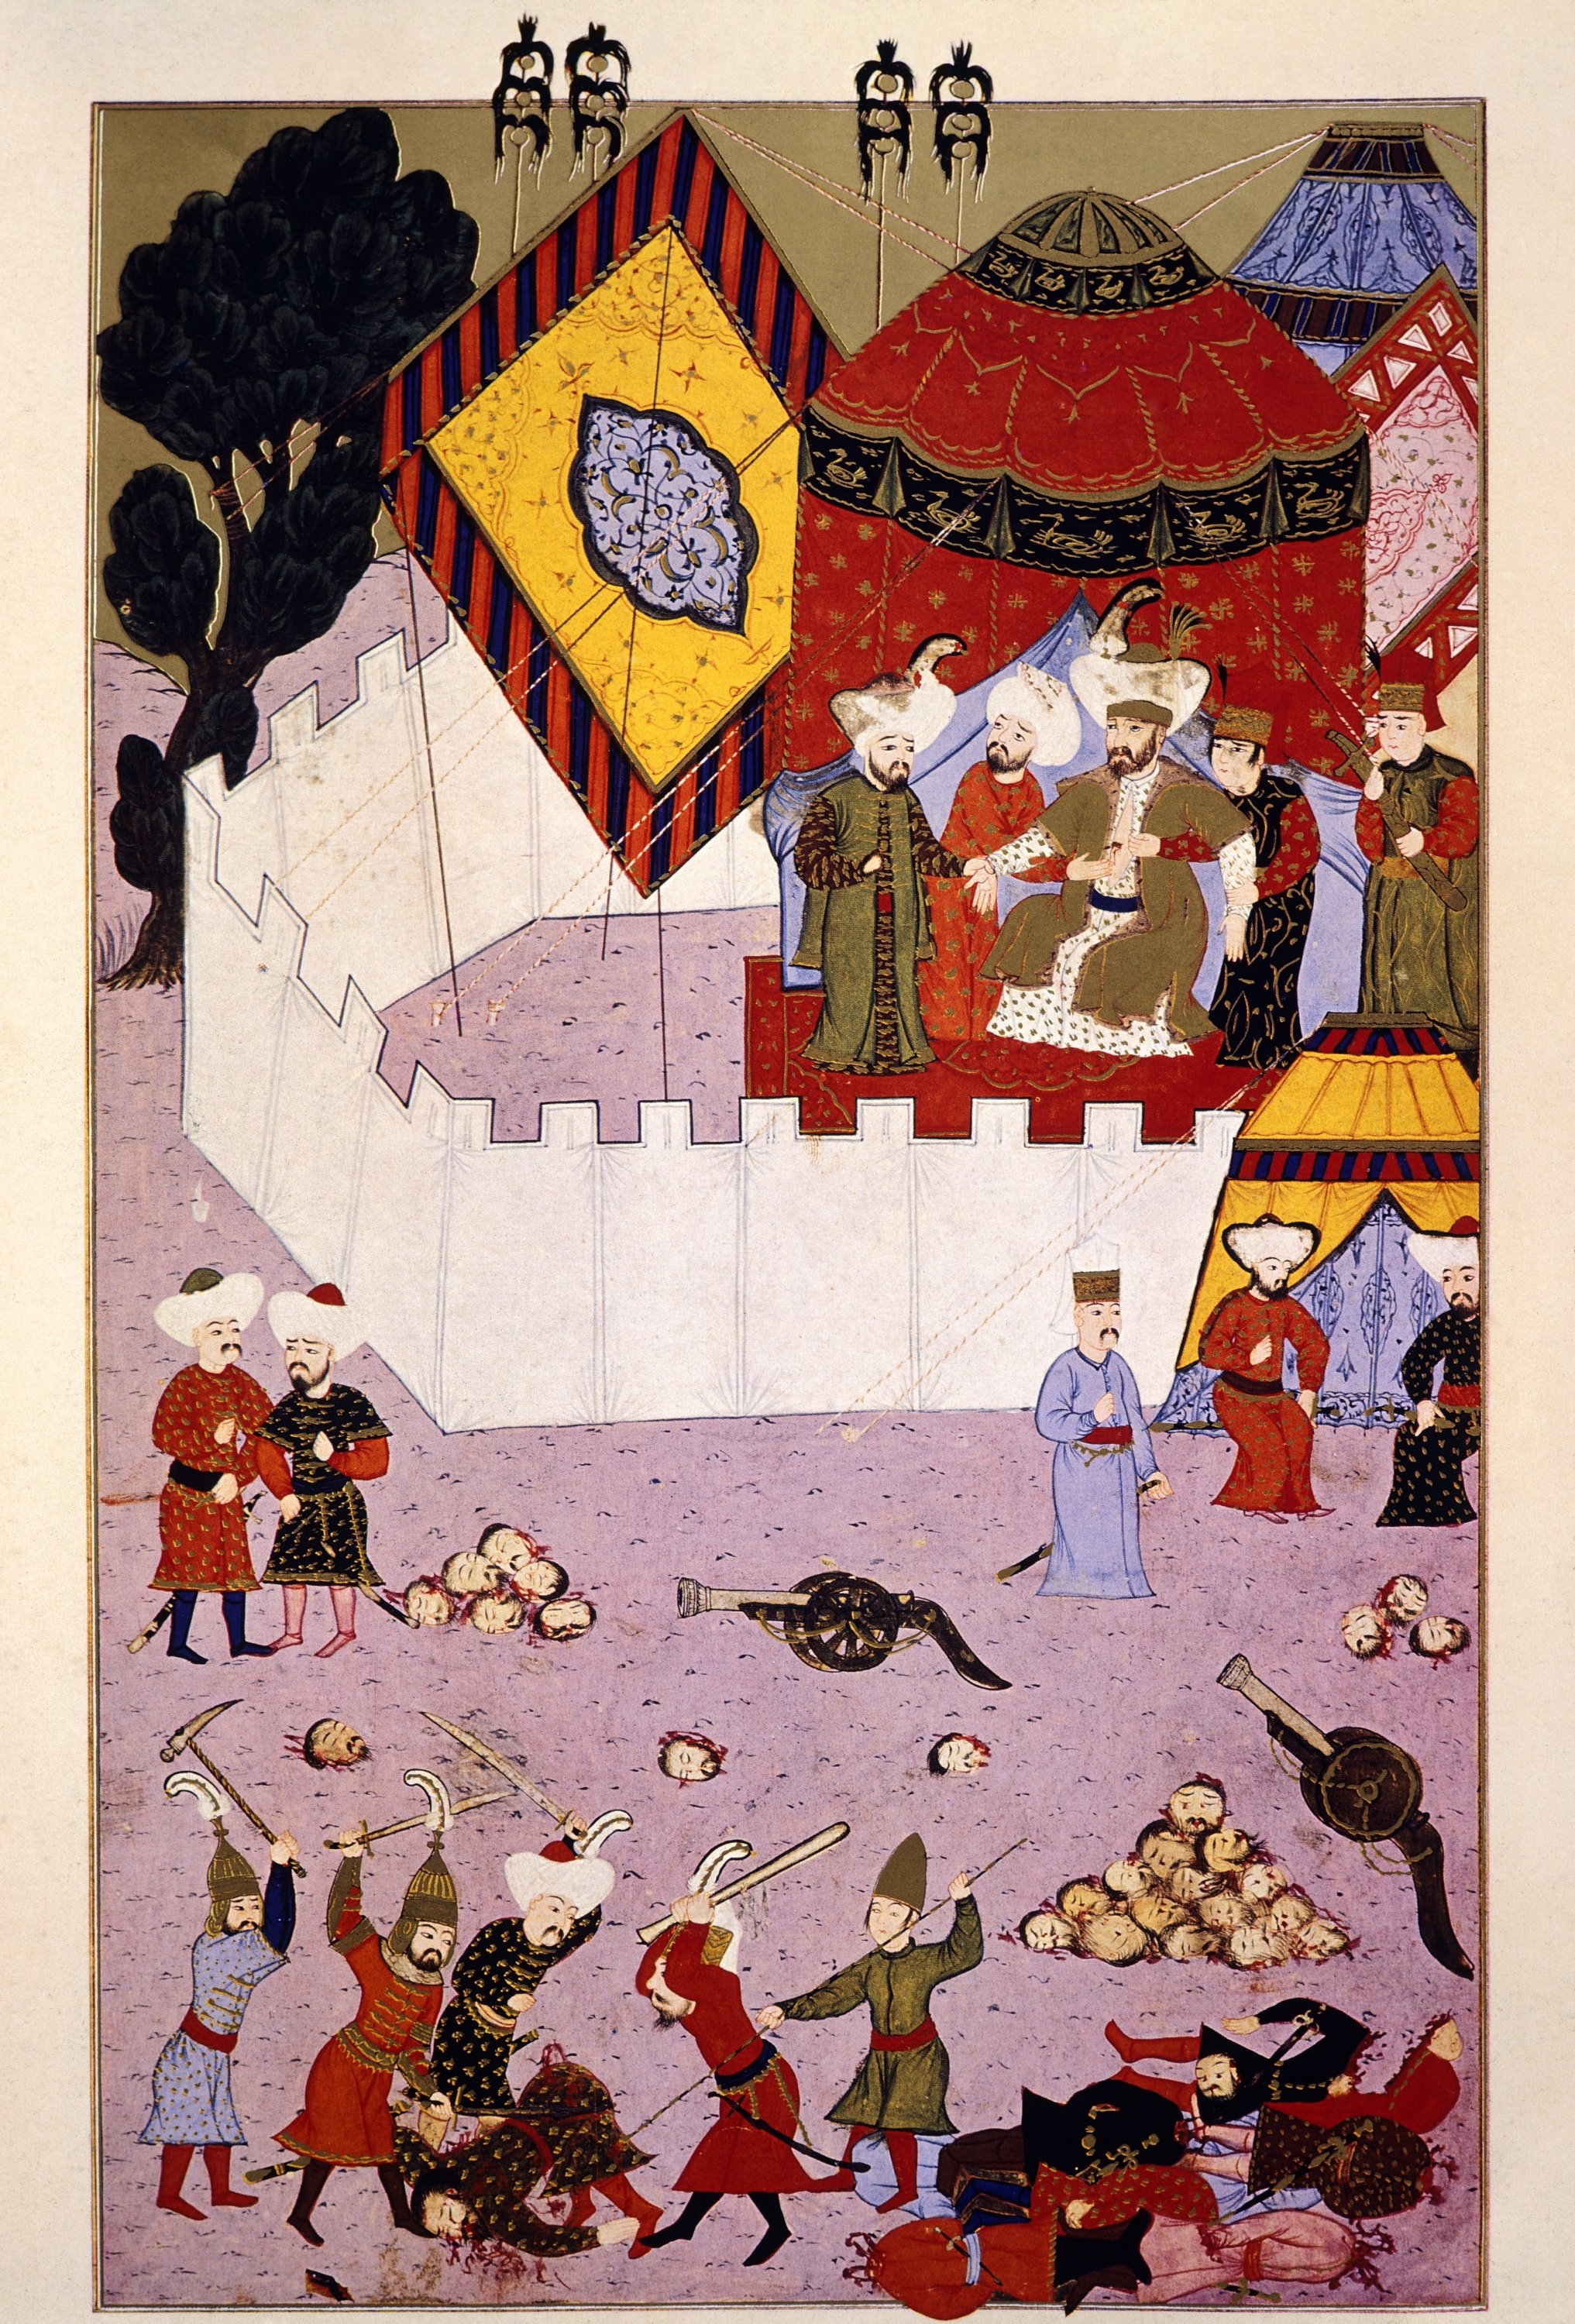 An Ottoman miniature depicts the Battle of Ankara.